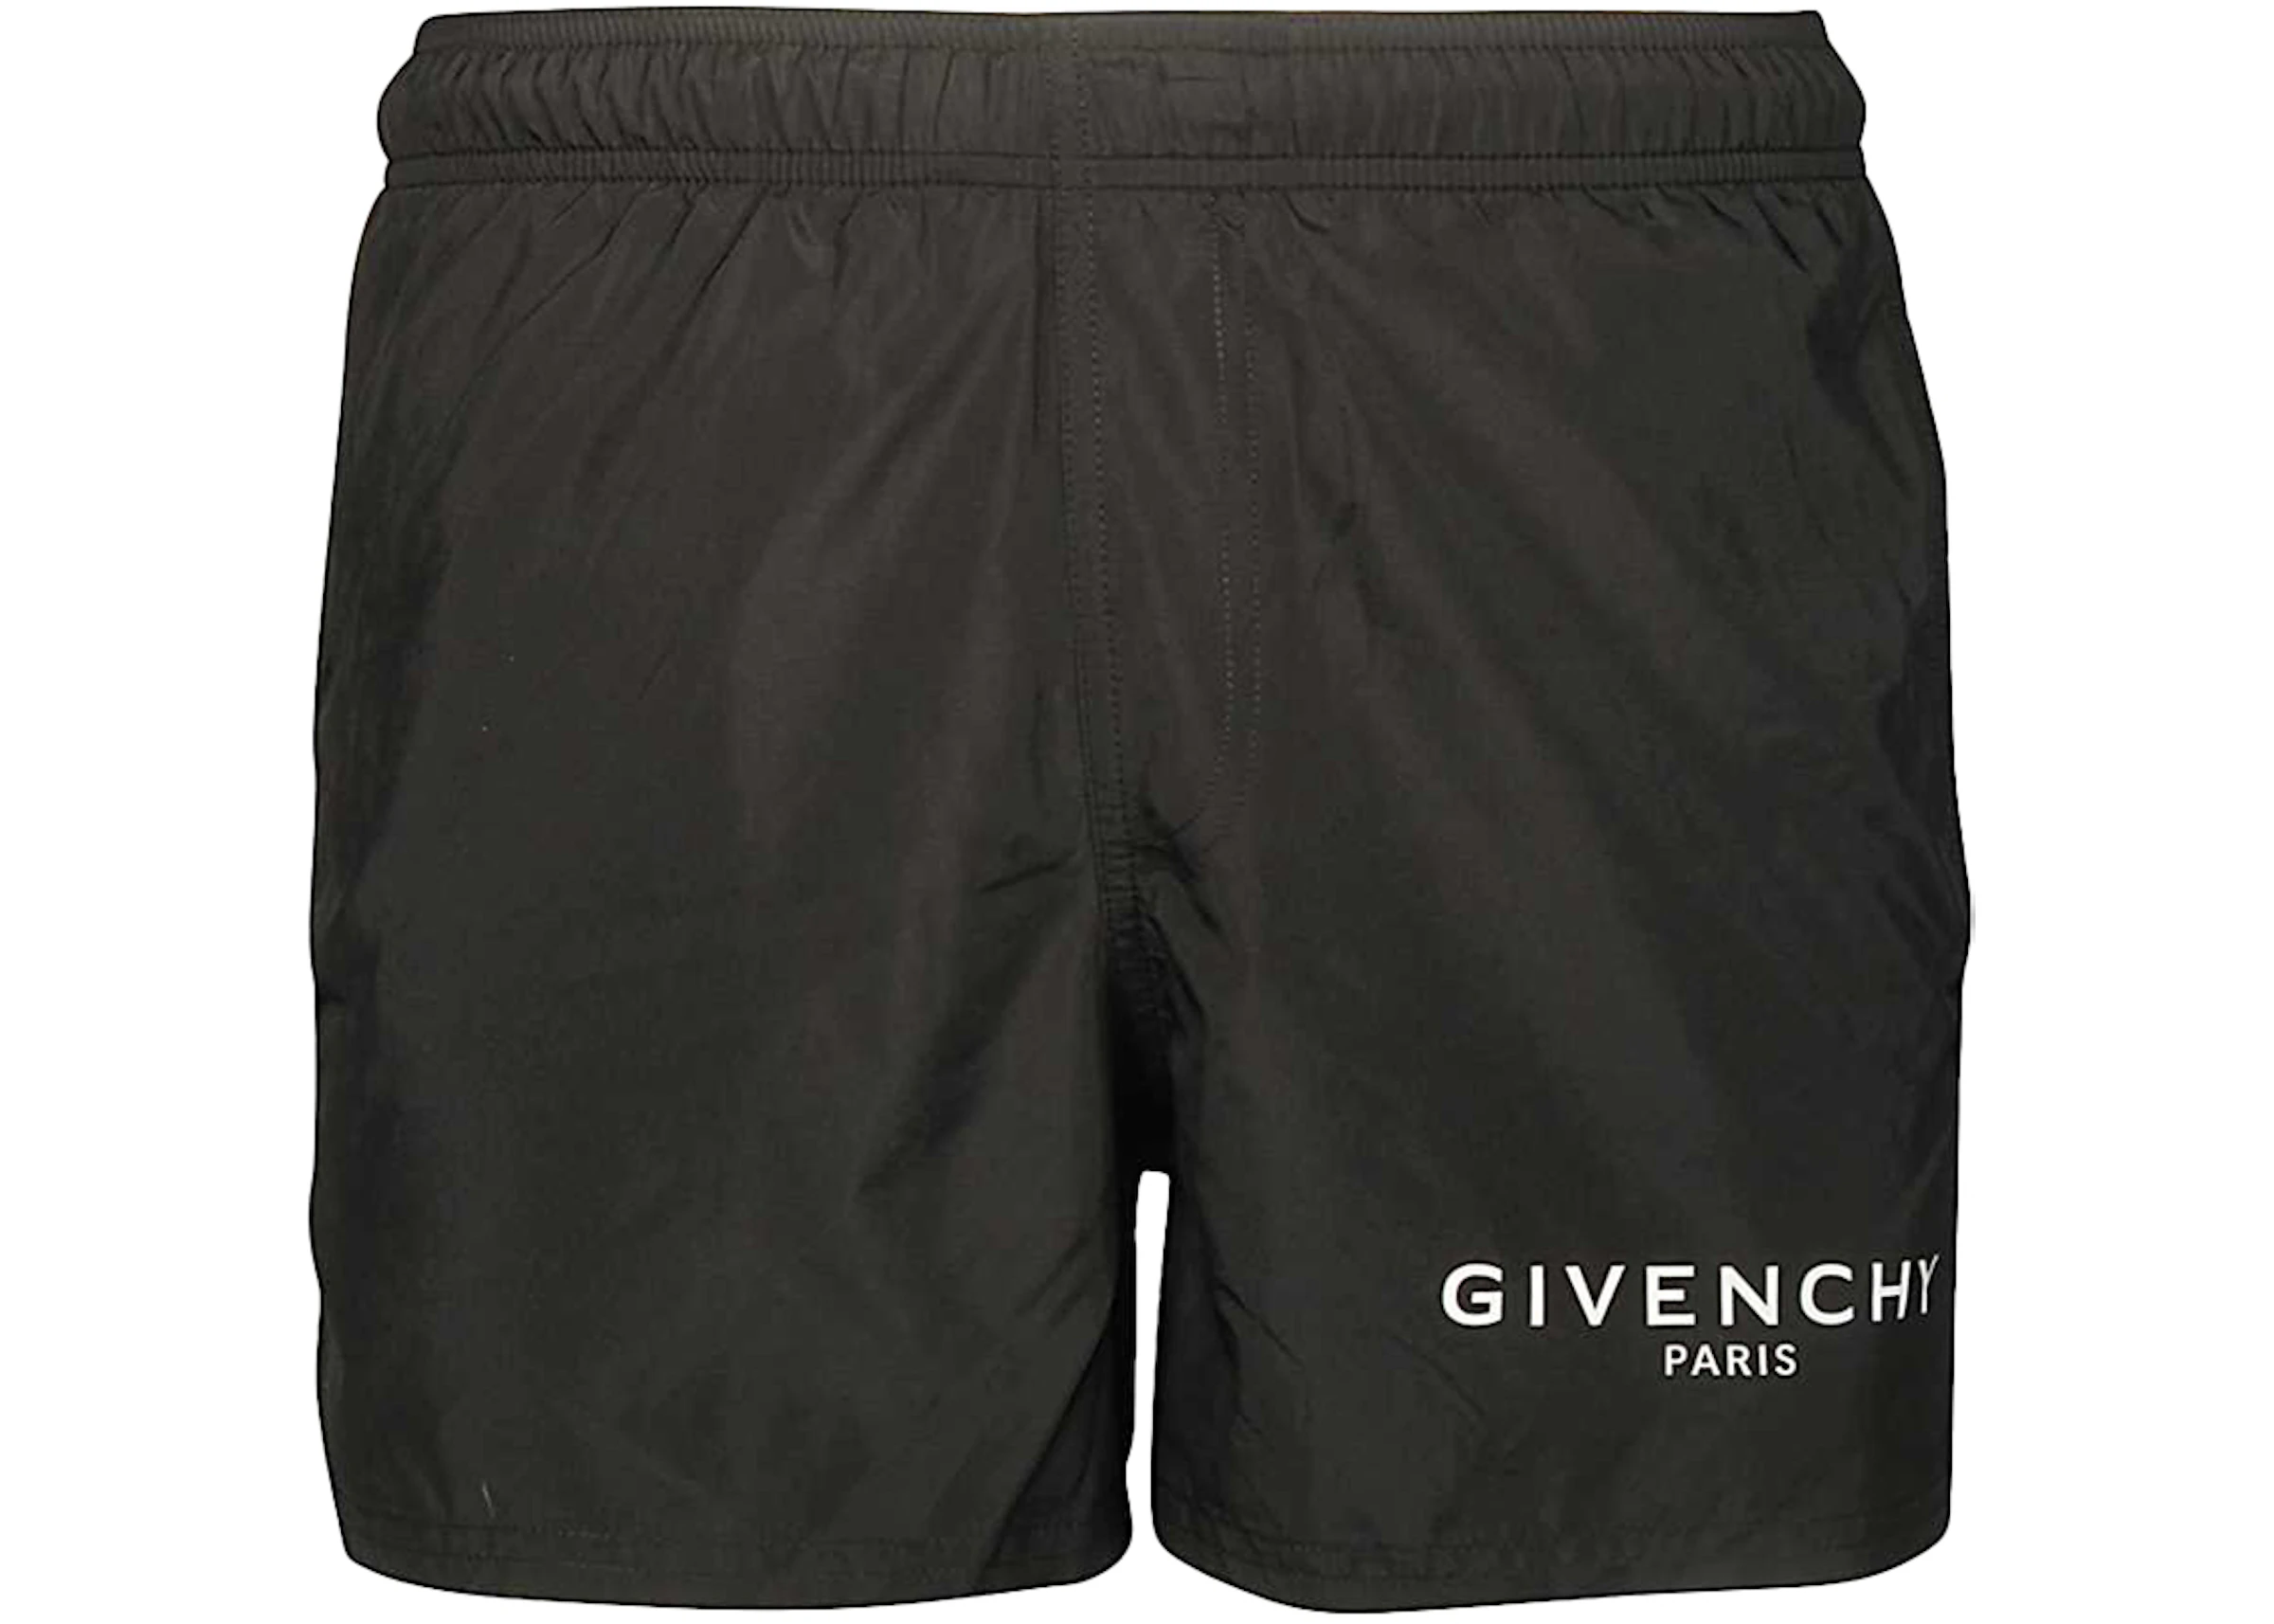 Givenchy Classic Logo Swim Short Black/White - US